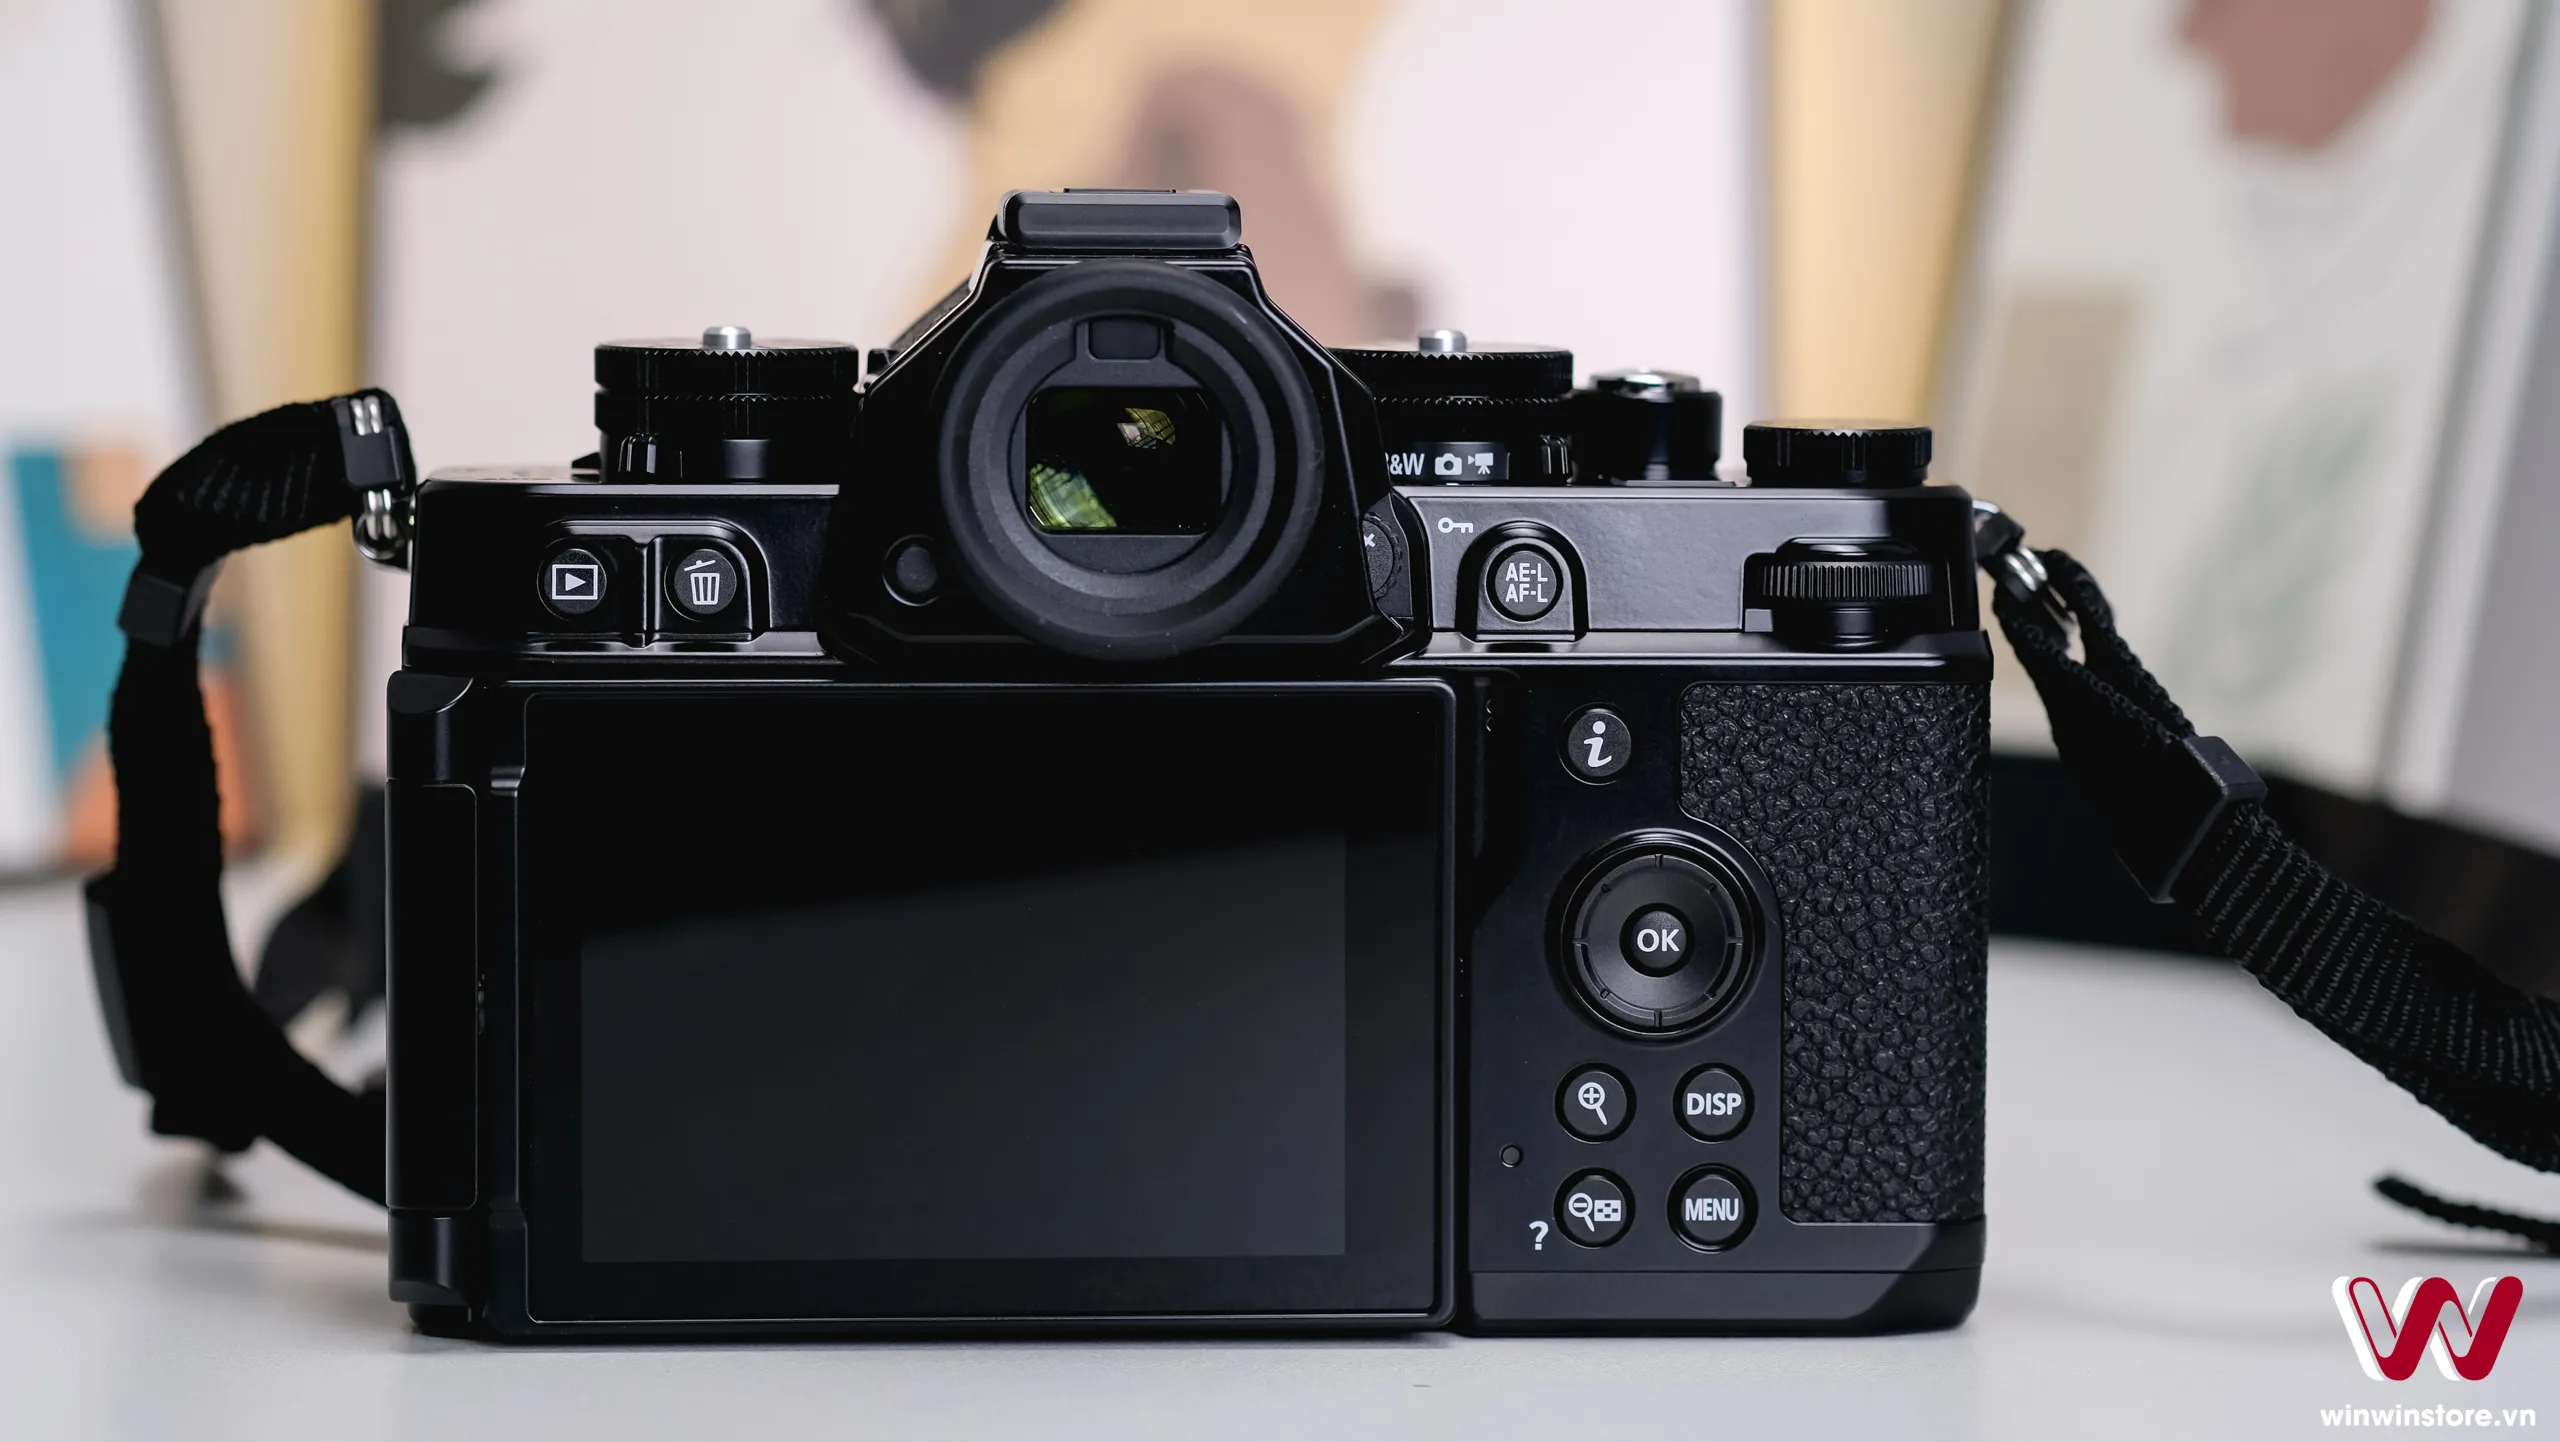 Trên tay máy ảnh Nikon Zf: Hiện đại kết hợp cổ điển, trải nghiệm hoài niệm